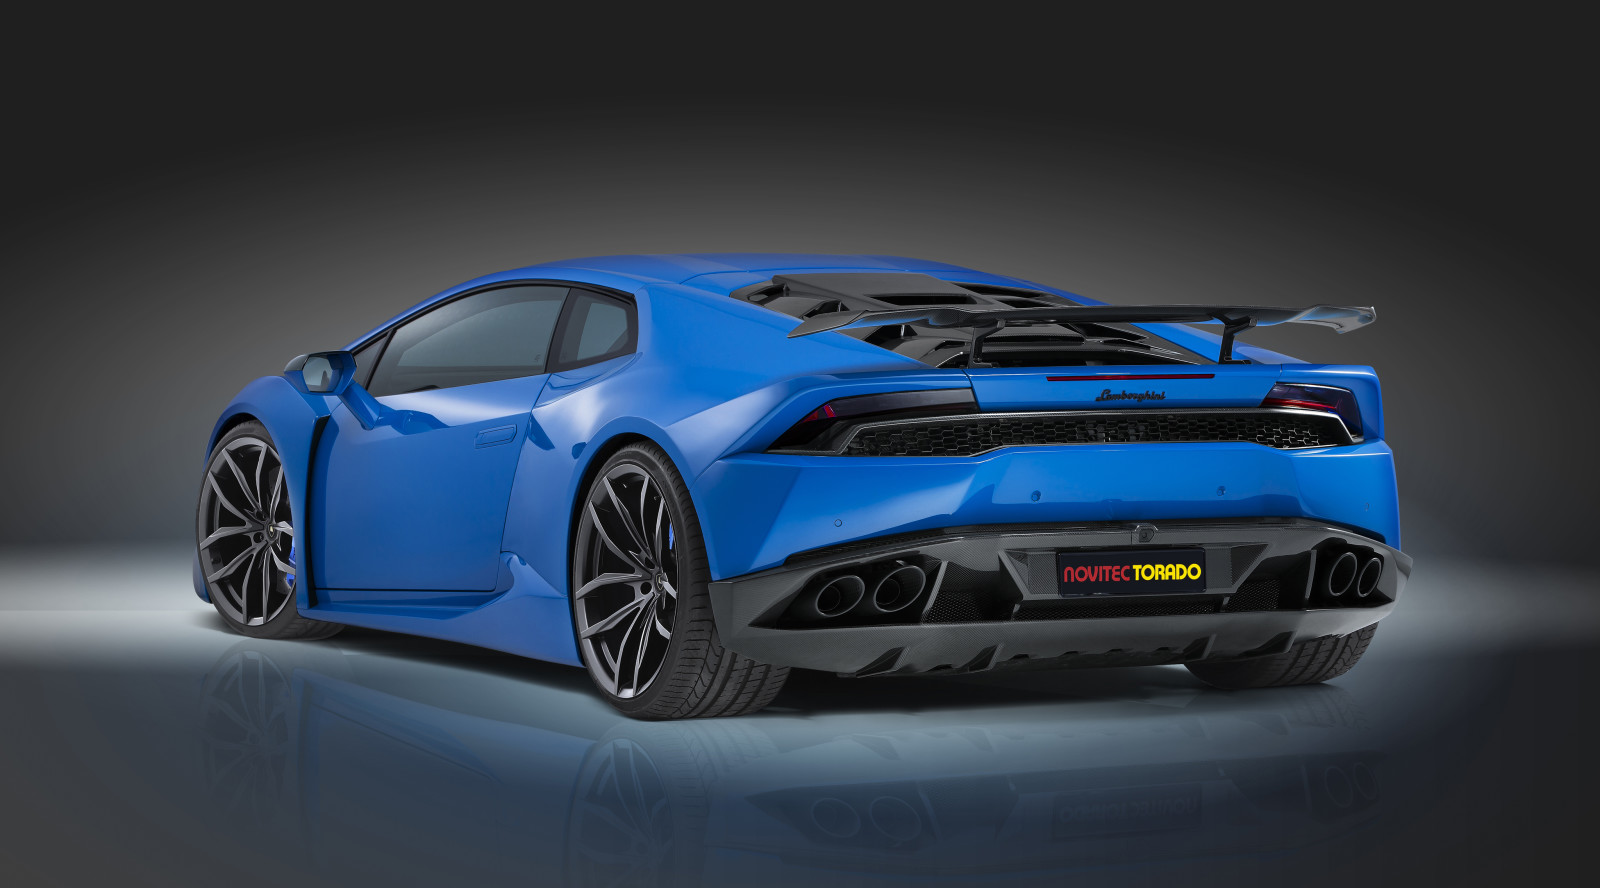 สีน้ำเงิน, Lamborghini, Huracan, Hurakan, Novitec Torado